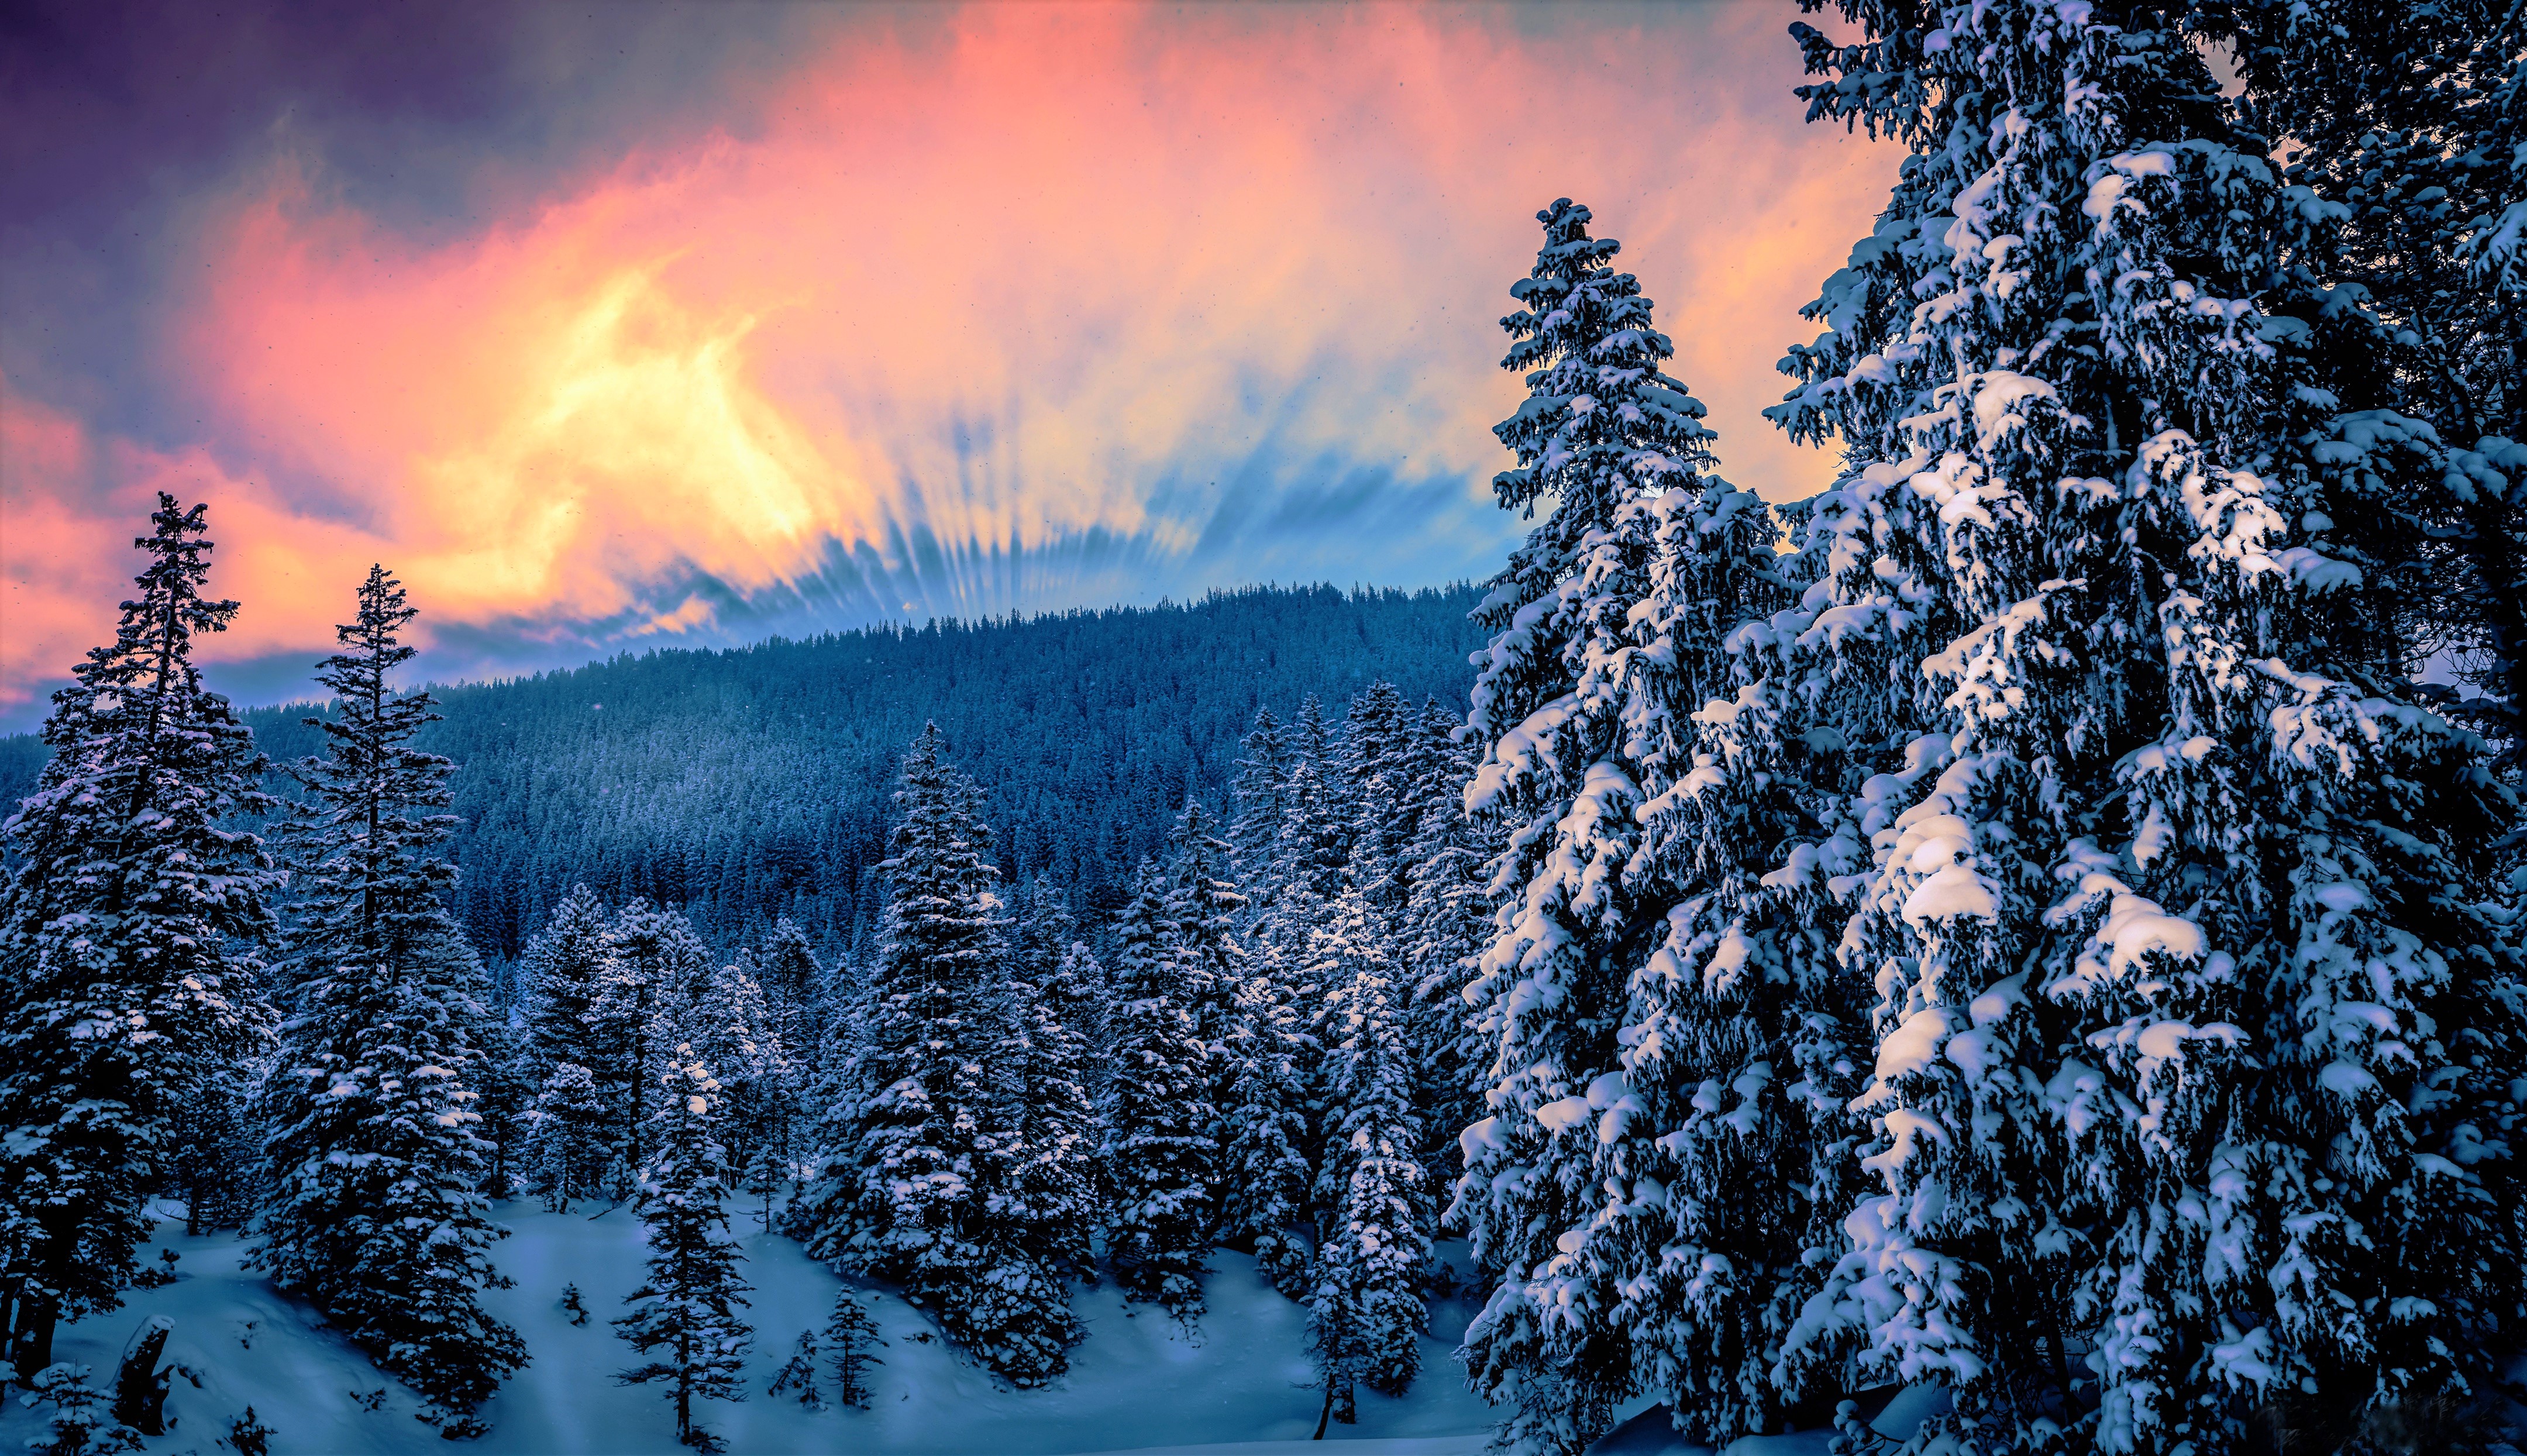 Скачать обои бесплатно Зима, Закат, Небо, Снег, Лес, Дерево, Земля/природа картинка на рабочий стол ПК